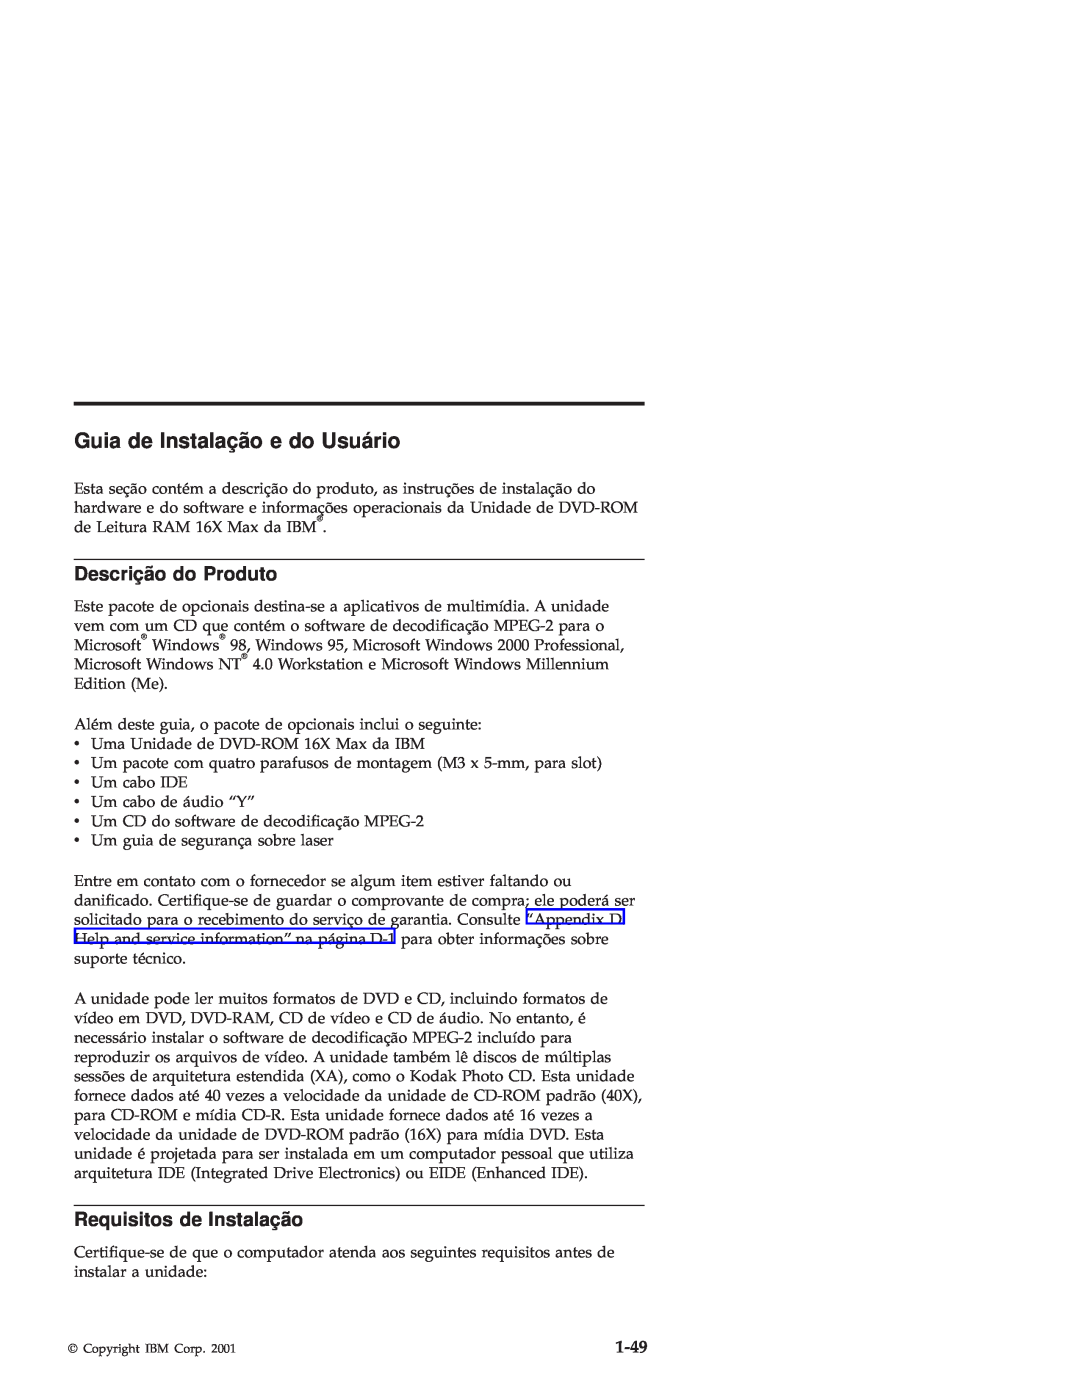 IBM 71P7285 manual Guia de Instalaçã o e do Usuário, Descriçã o do Produto, Requisitos de Instalação, 1-49 